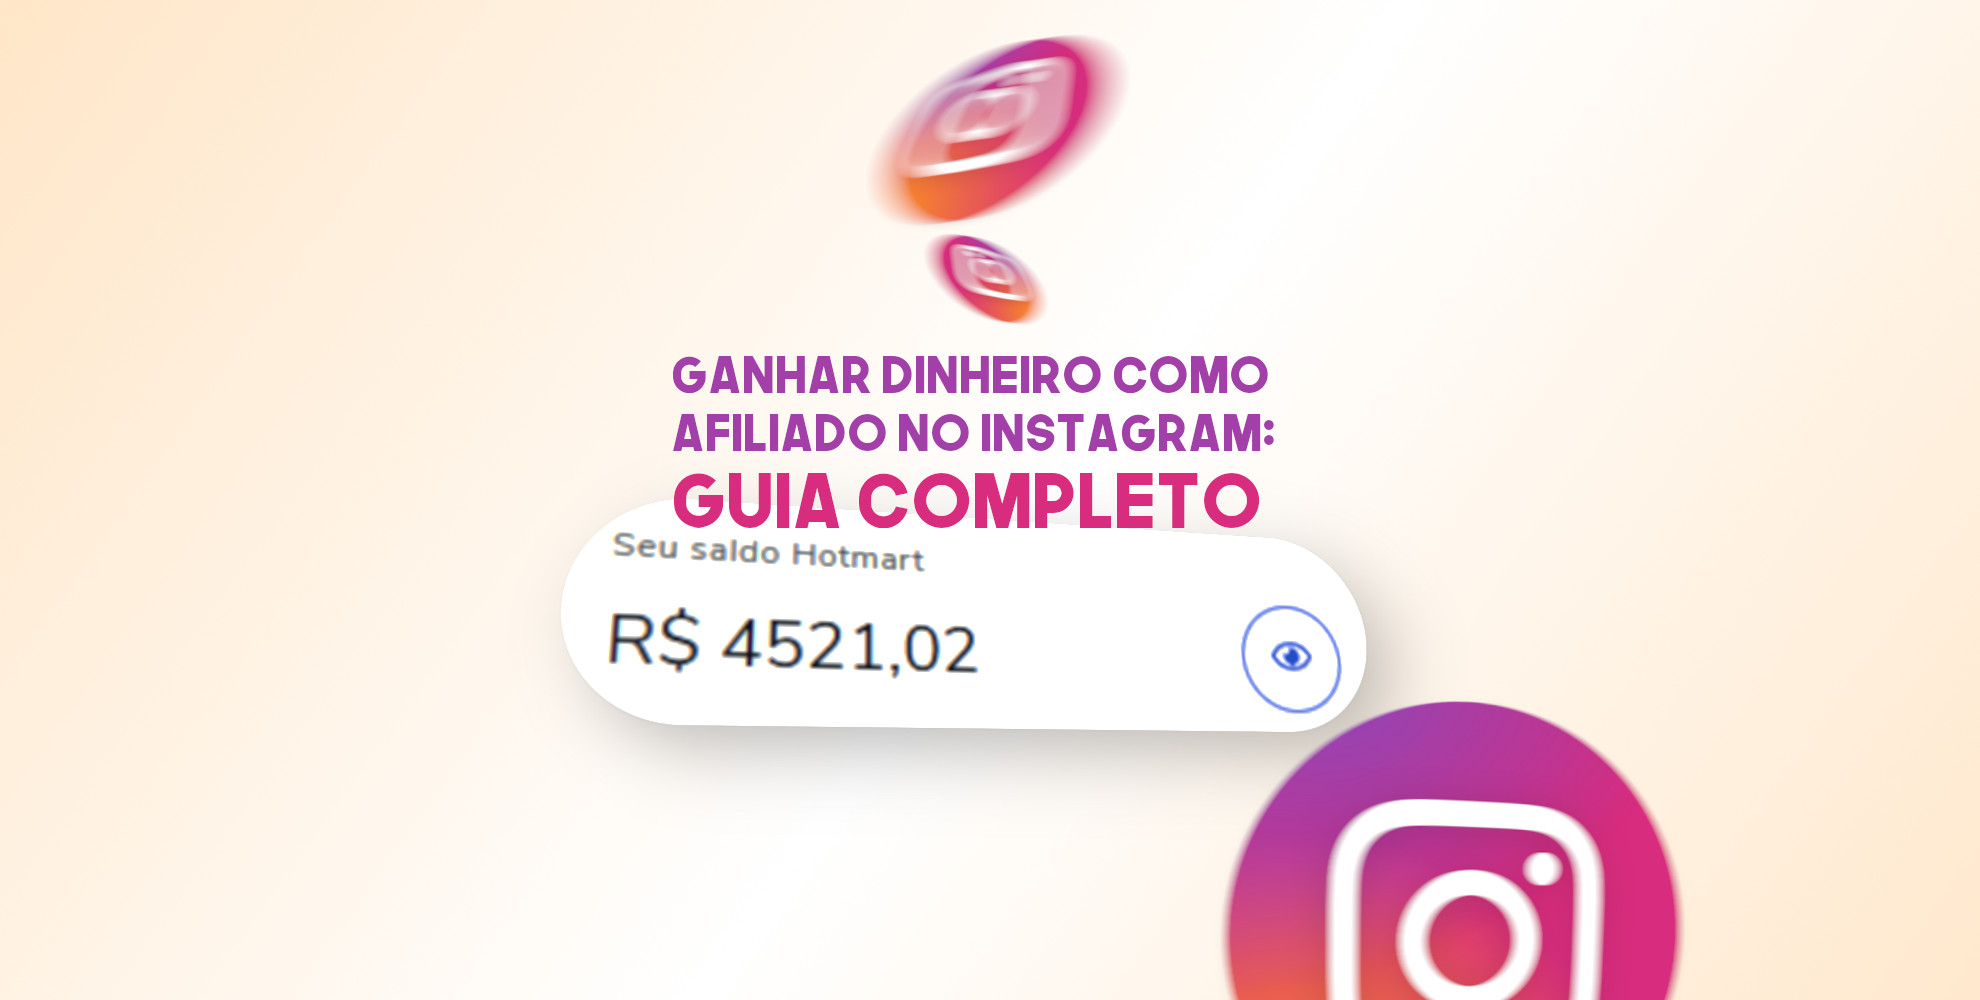 Ganhar dinheiro como afiliado no Instagram: Guia Completo 2021